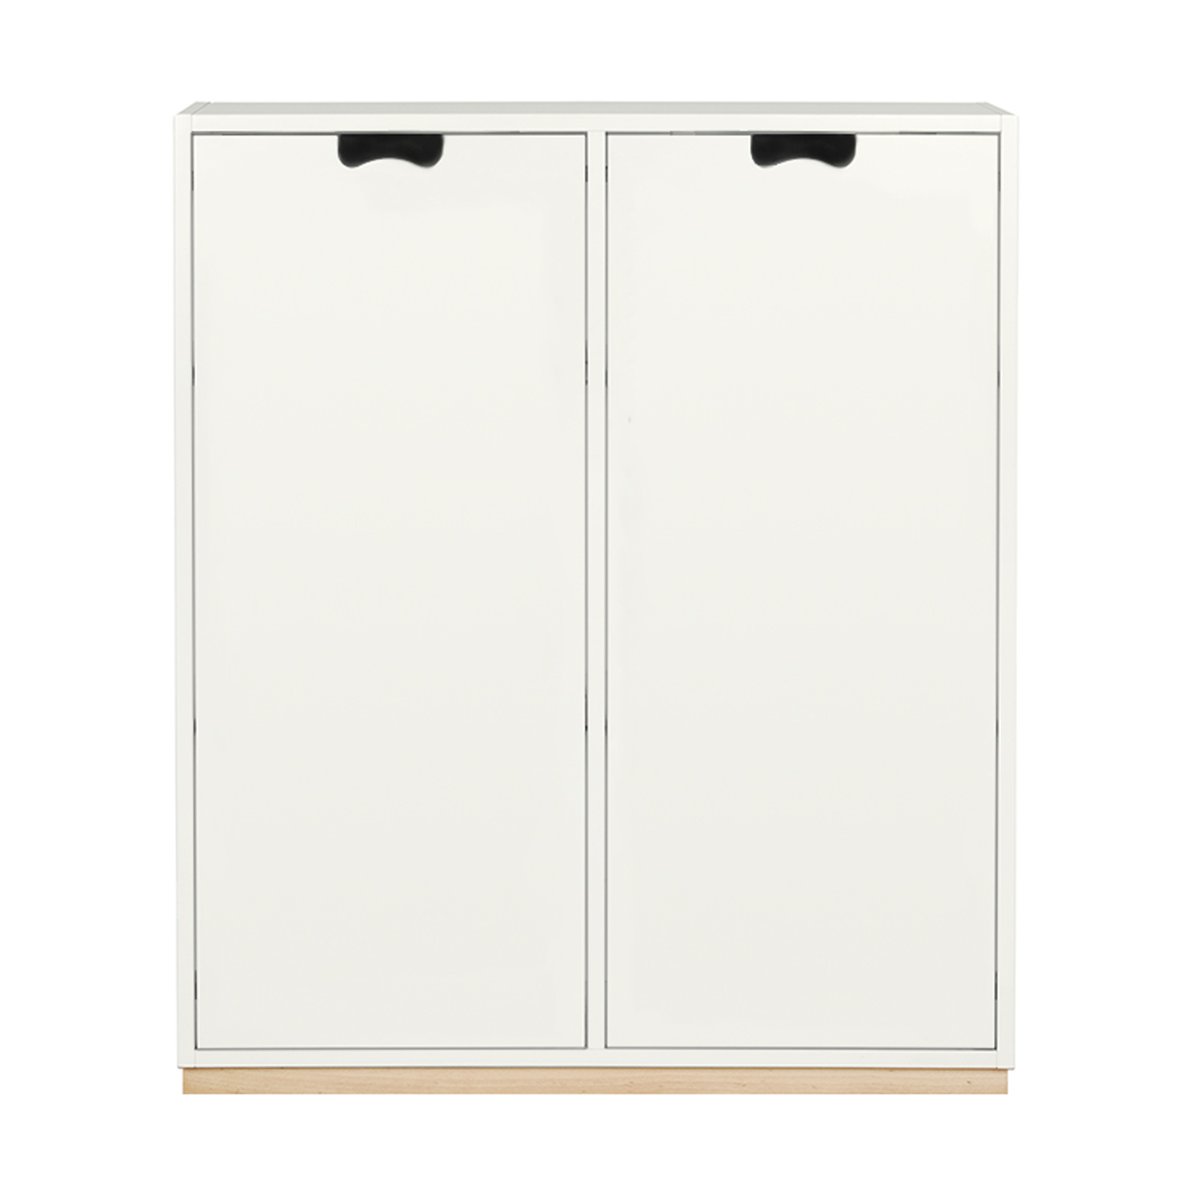 Asplund Snö E skåp white, björksockel/täckta dörrar, dj.30 cm